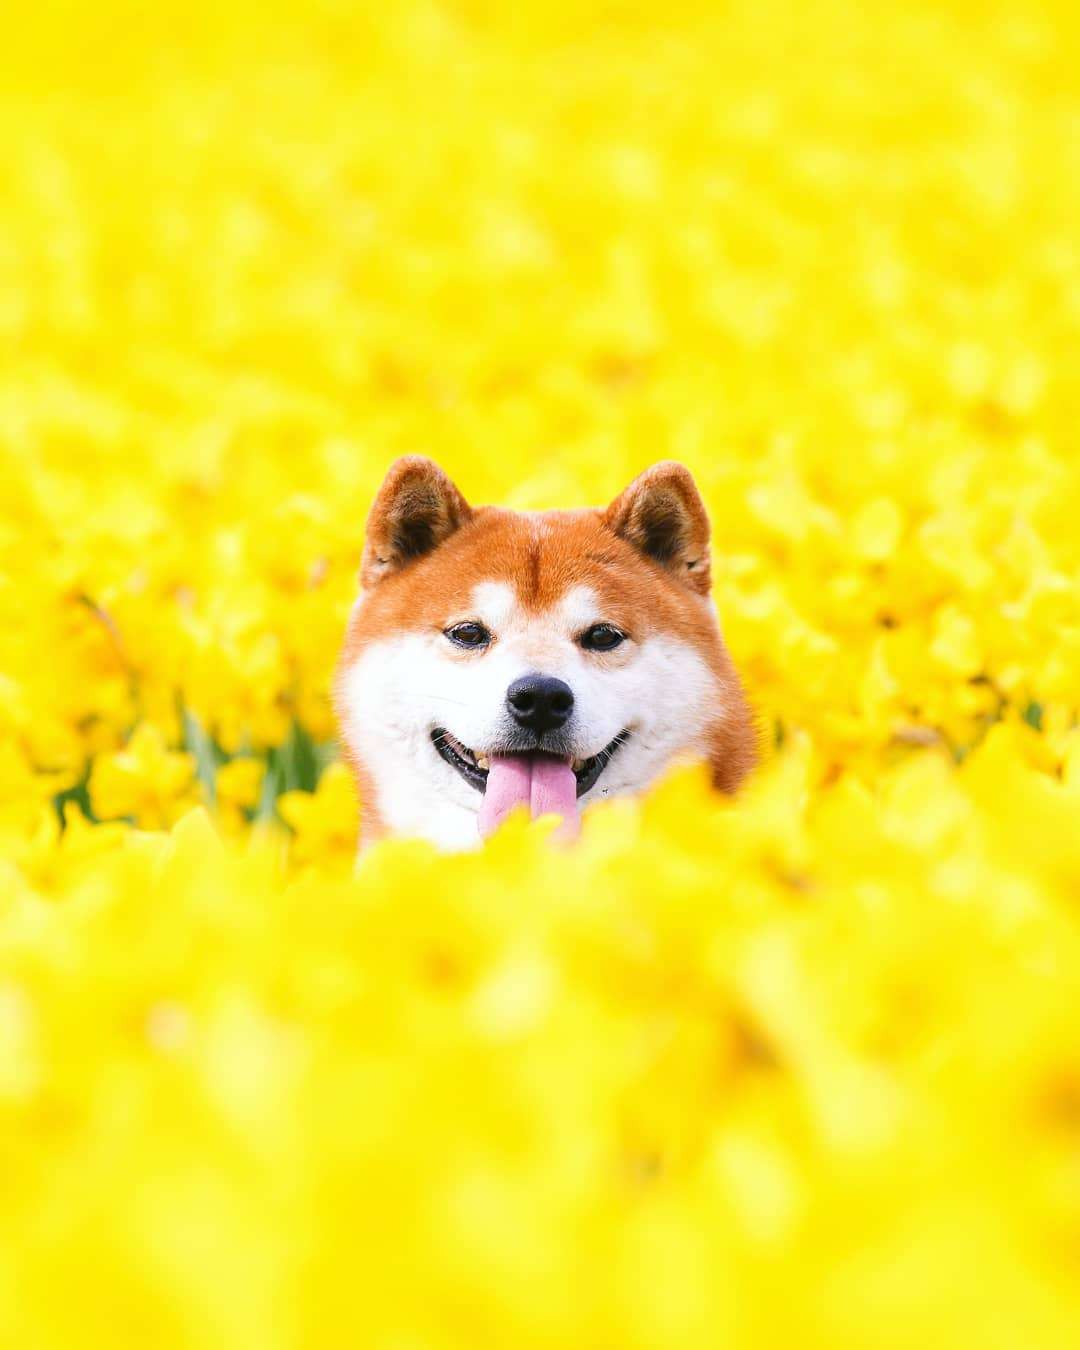 Фото этого улыбающегося пса на фоне цветов делают людей счастливыми, и это правда работает - фото 433968